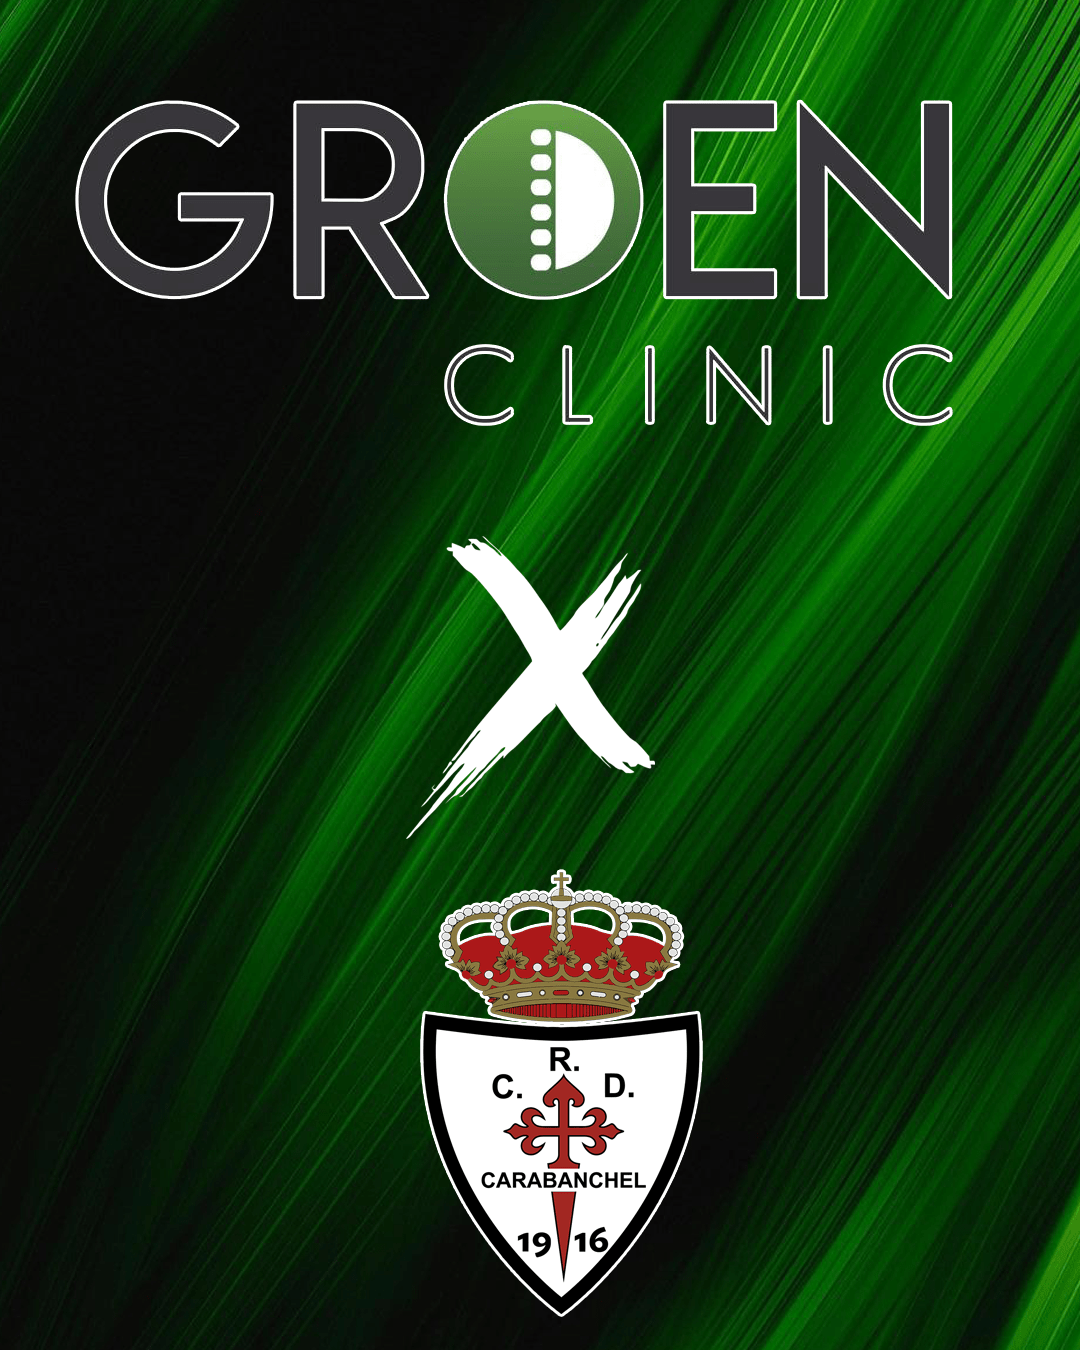 patrocinador groen clinic min